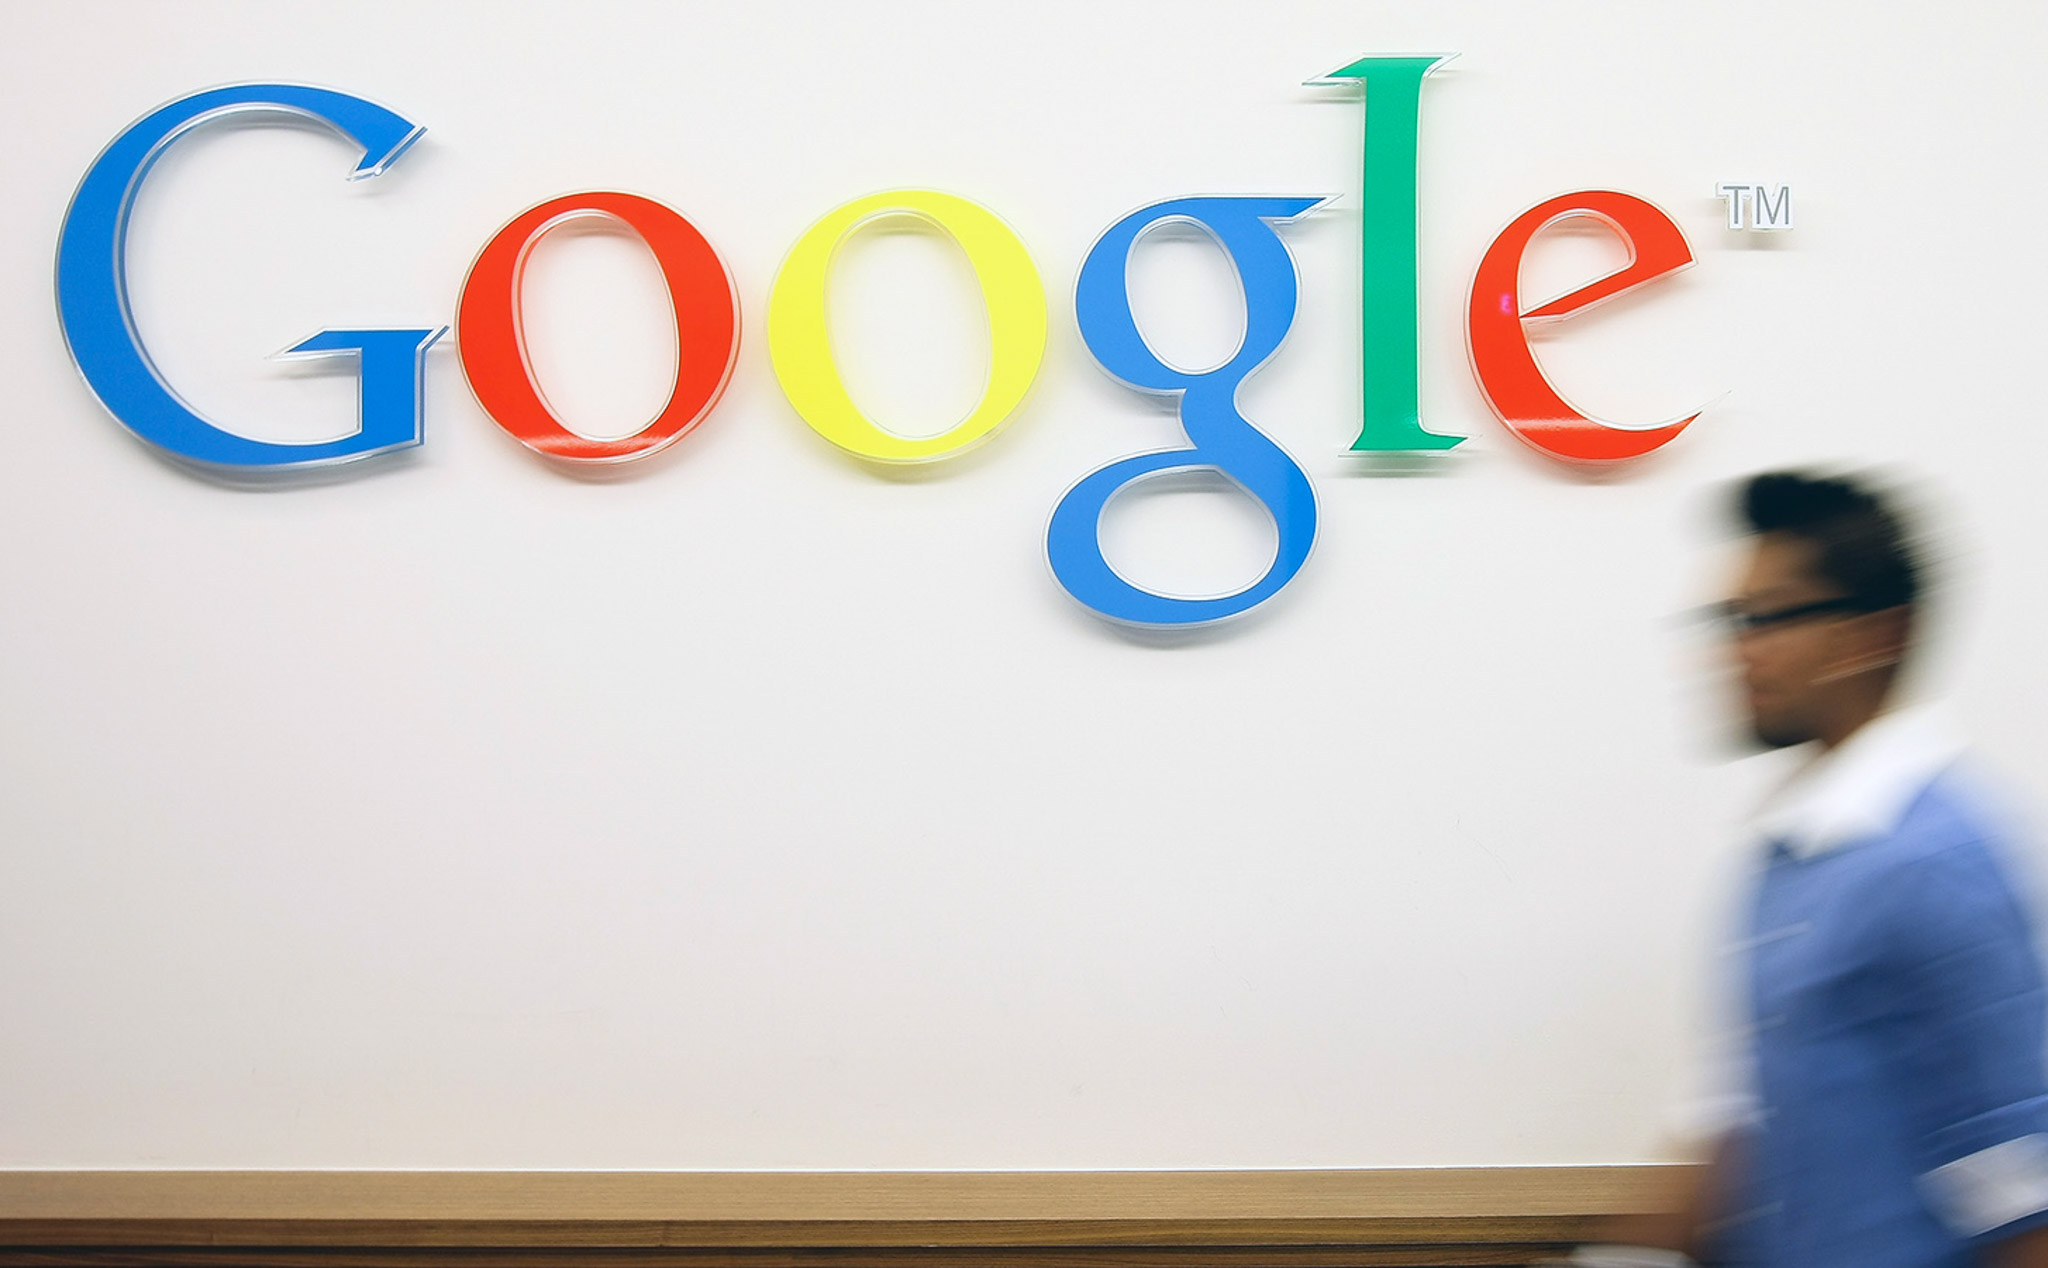 Google bị tố cáo ăn cắp lời bài hát từ Genius Media để dùng trong trình tìm kiếm